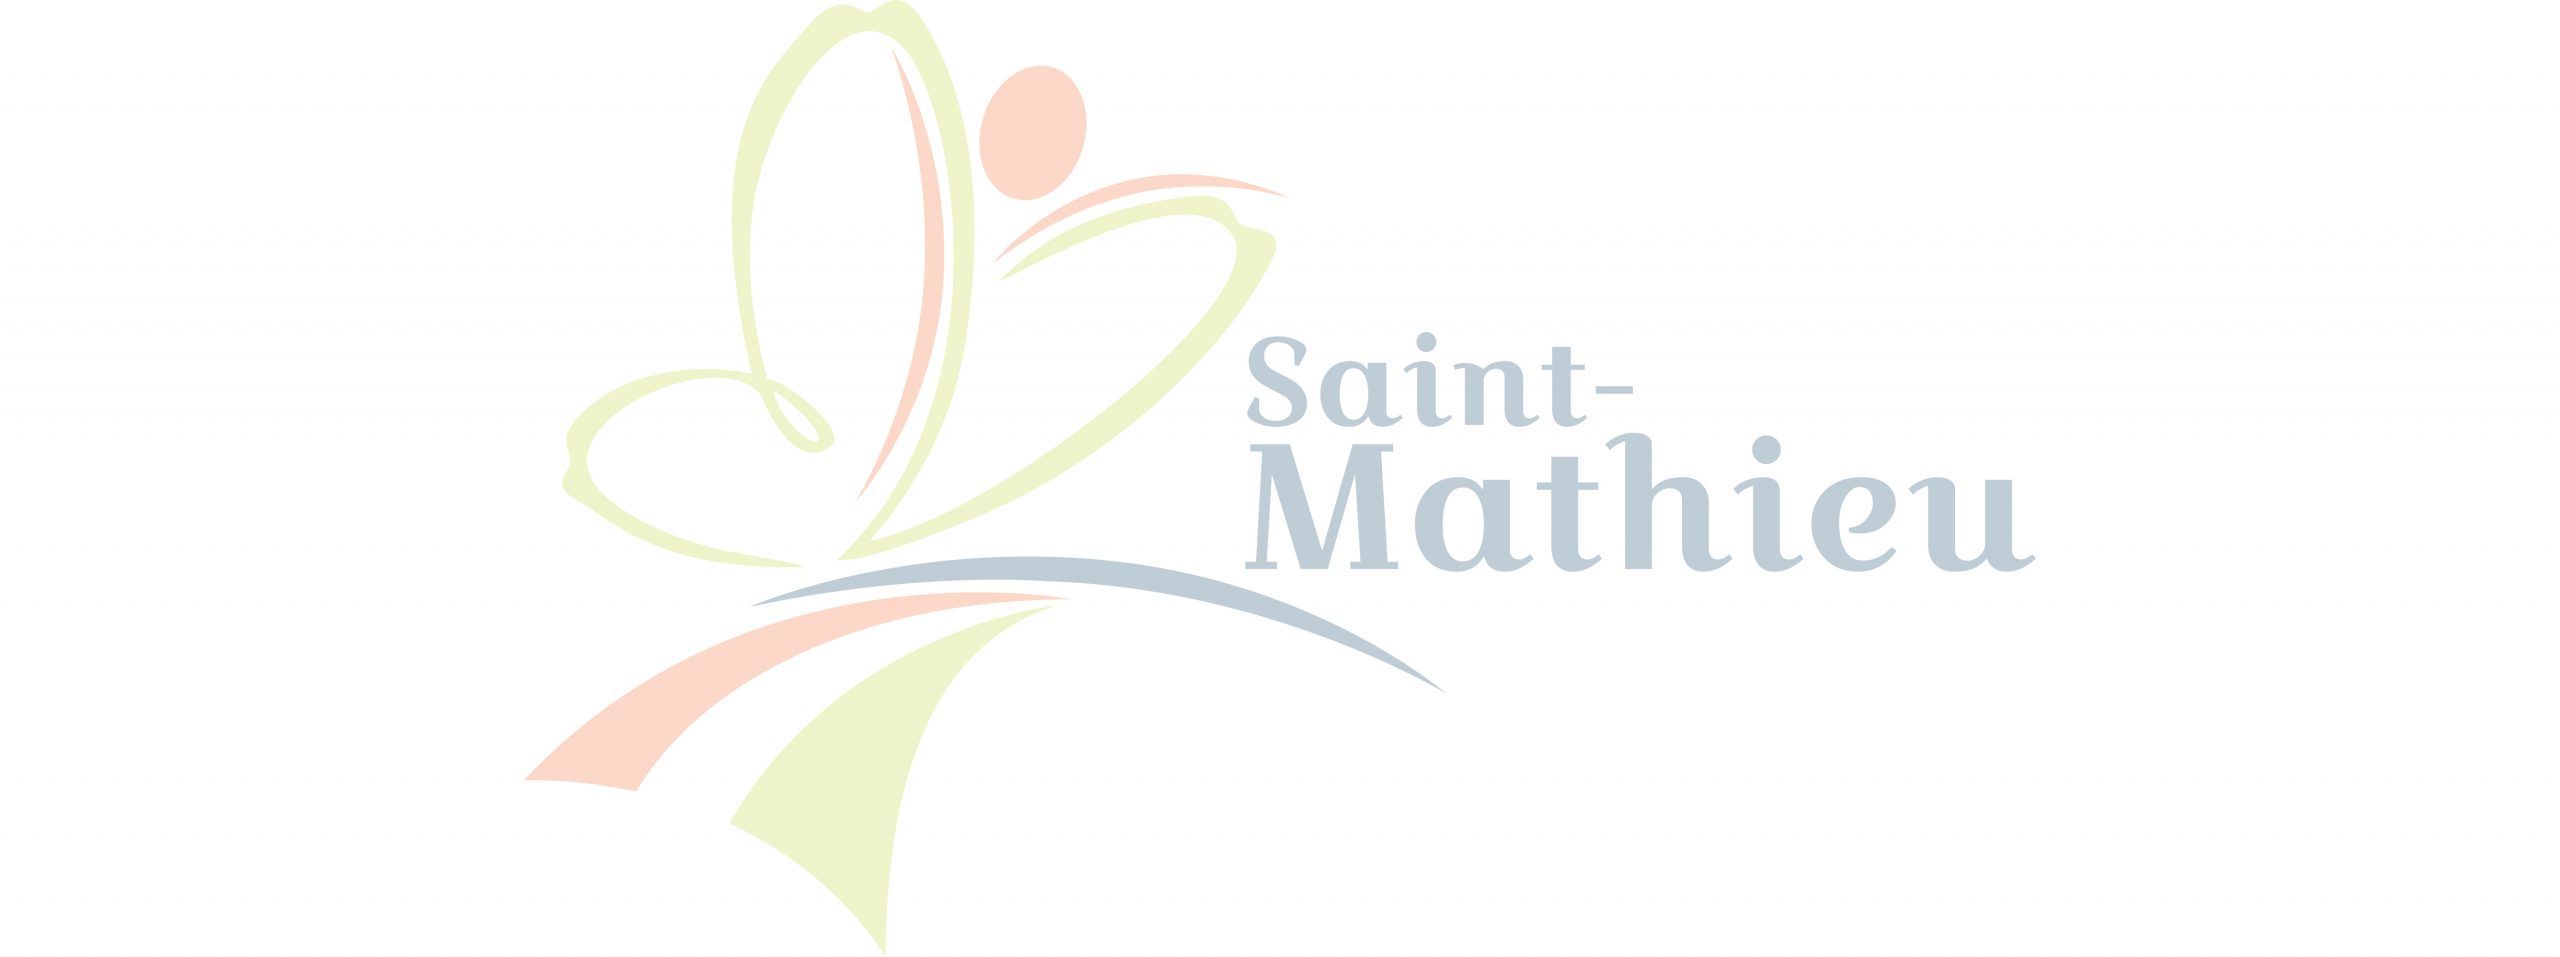 Épisode 3 – Saint-Mathieu, un avenir prometteur